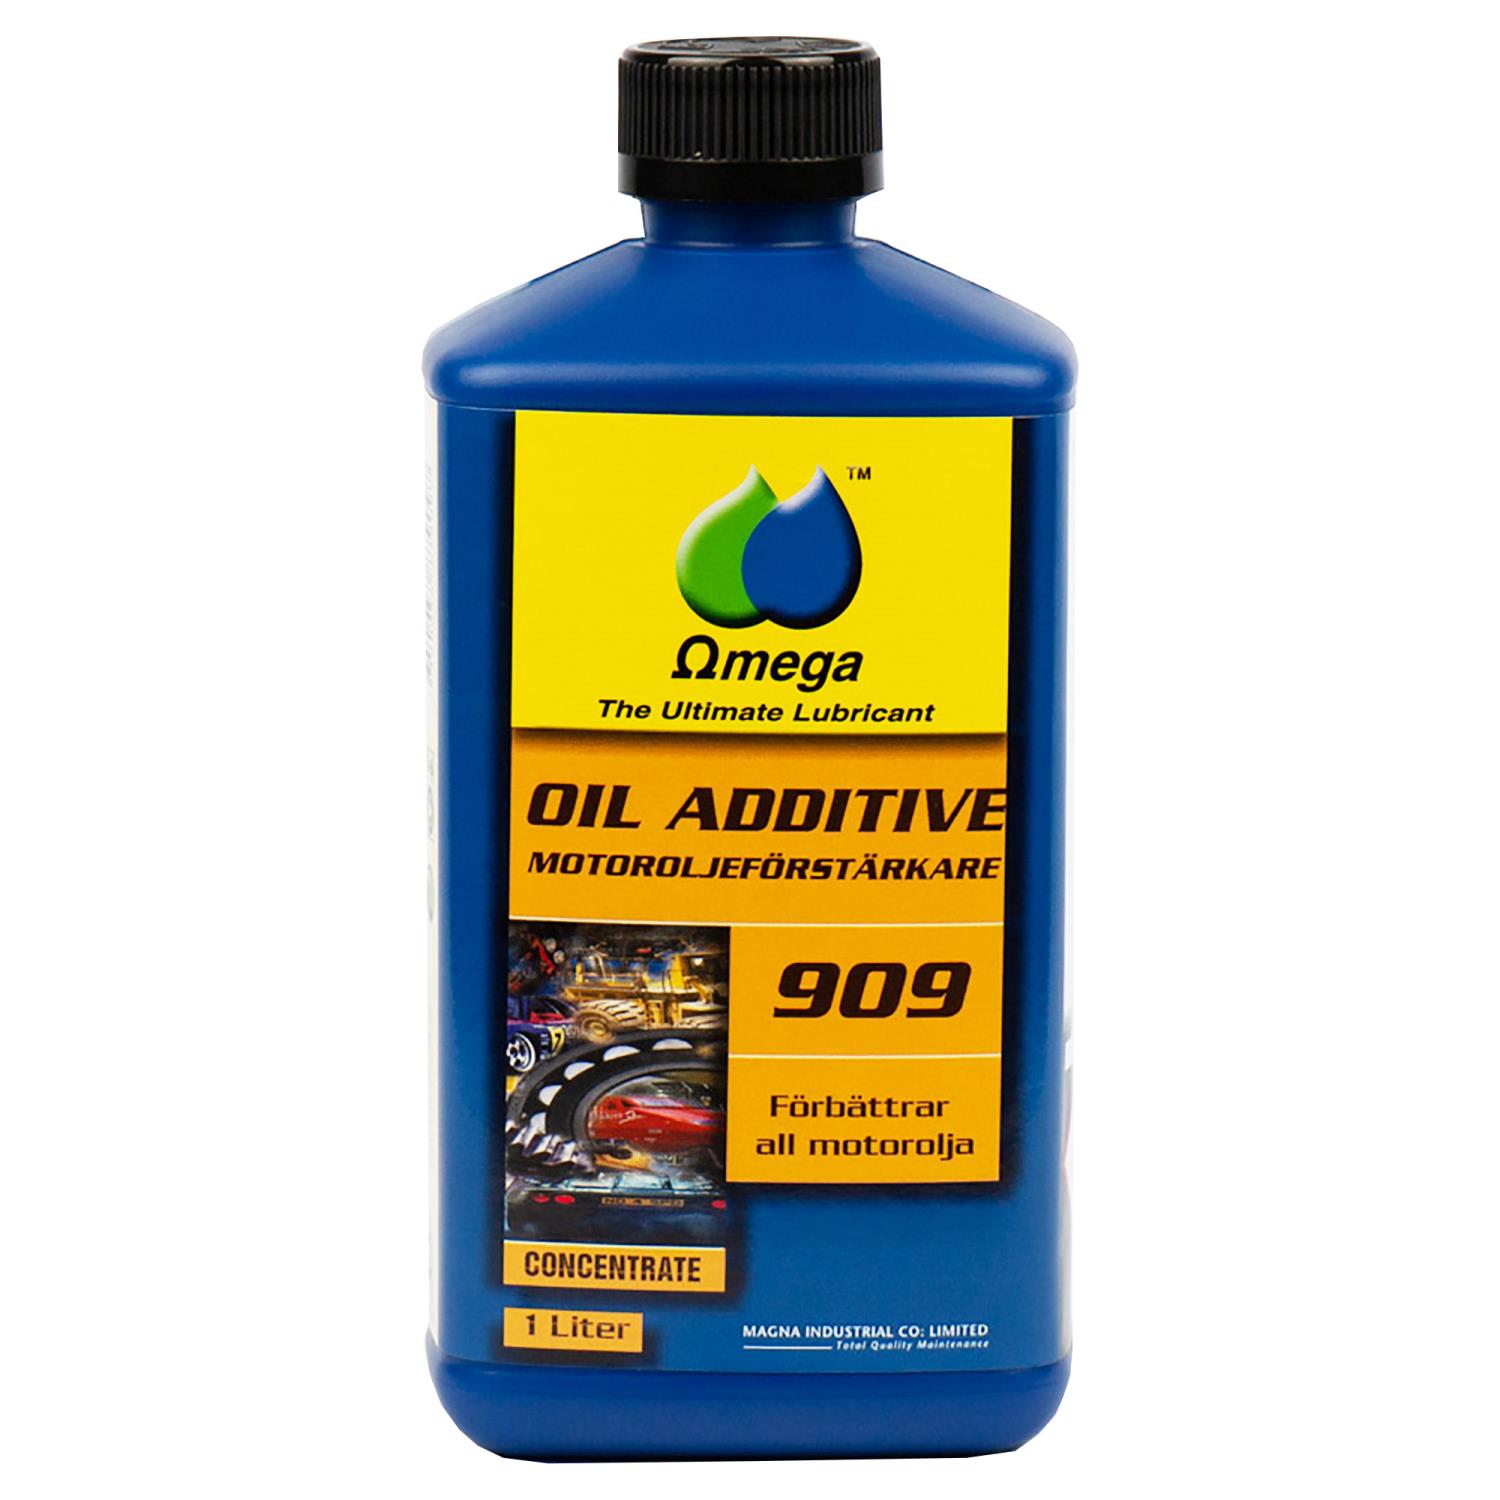 Omega 909 motoroljeforsterker - Oljetilsetning1 Liter